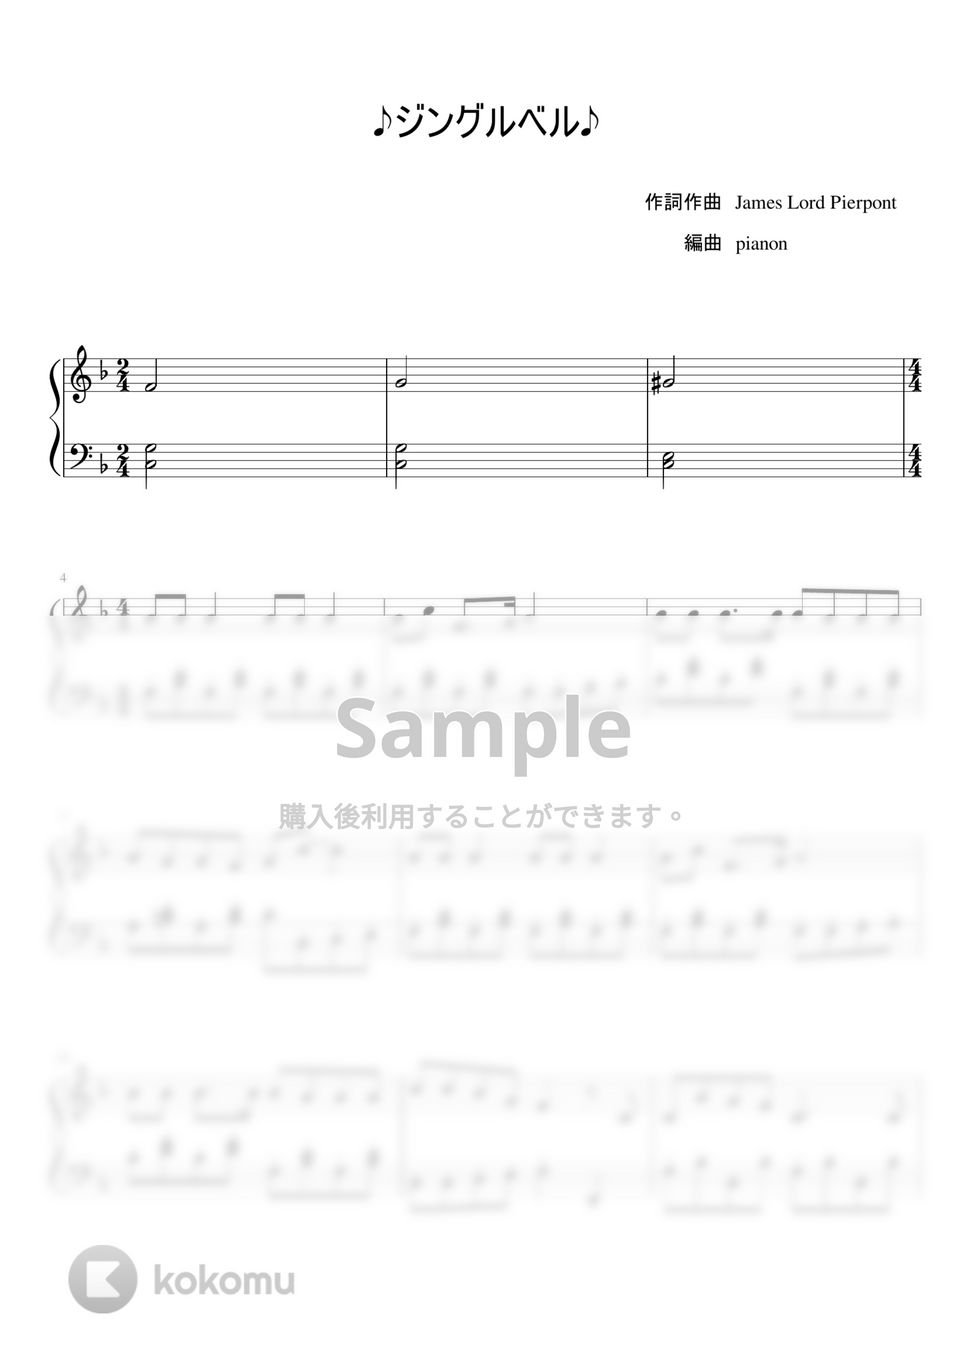 James  Lord Pierpont - ジングルベル (ピアノソロ初中級) by pianon